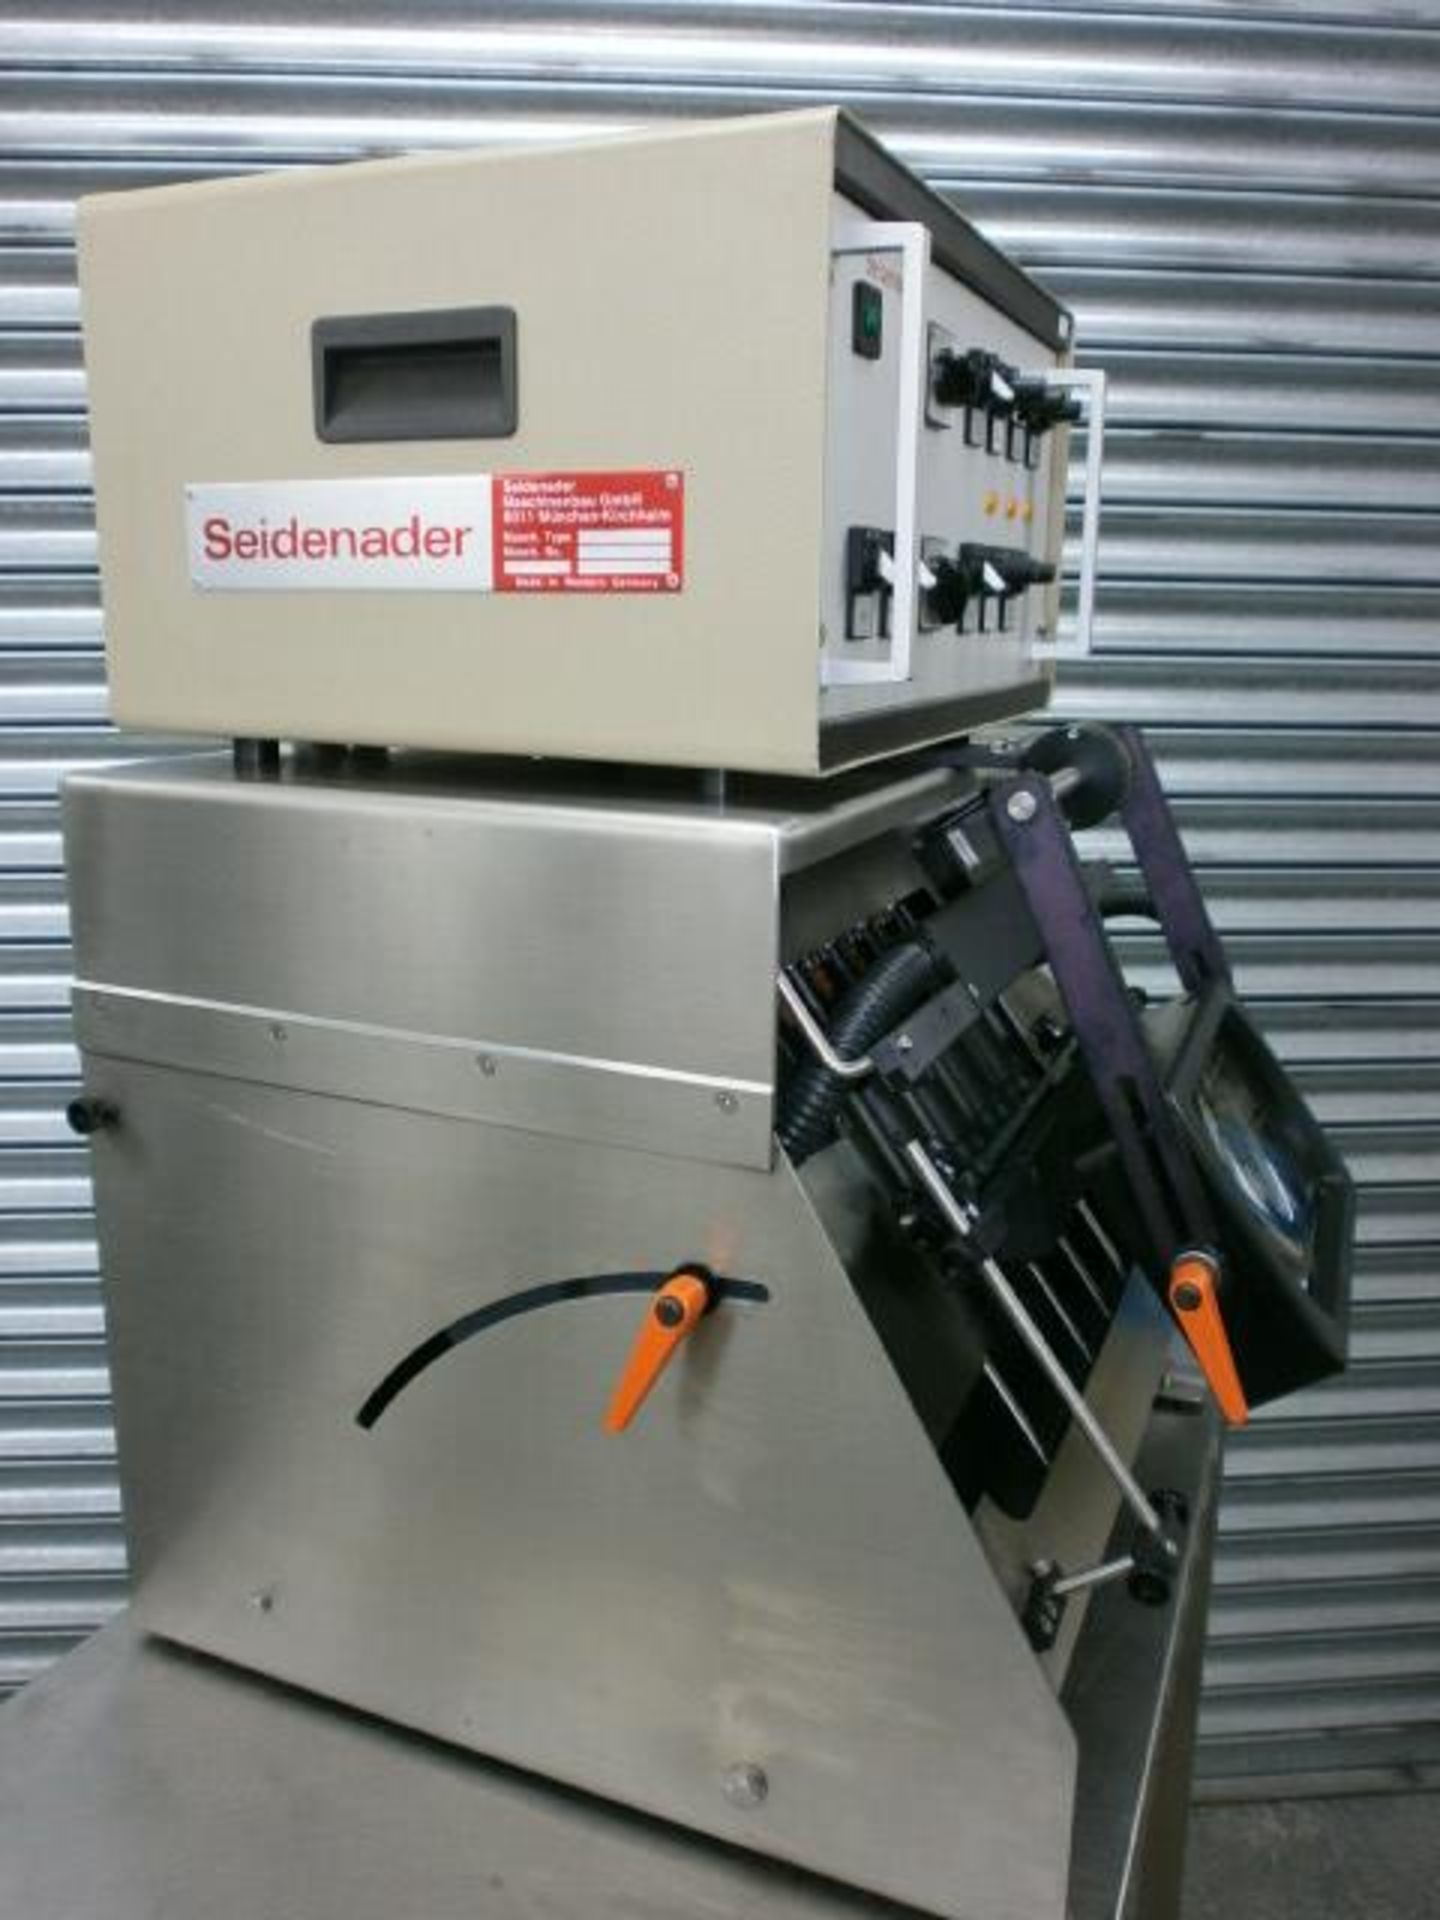 Seidenader Vial & Ampoule Inspection Machine Model - Bild 5 aus 9